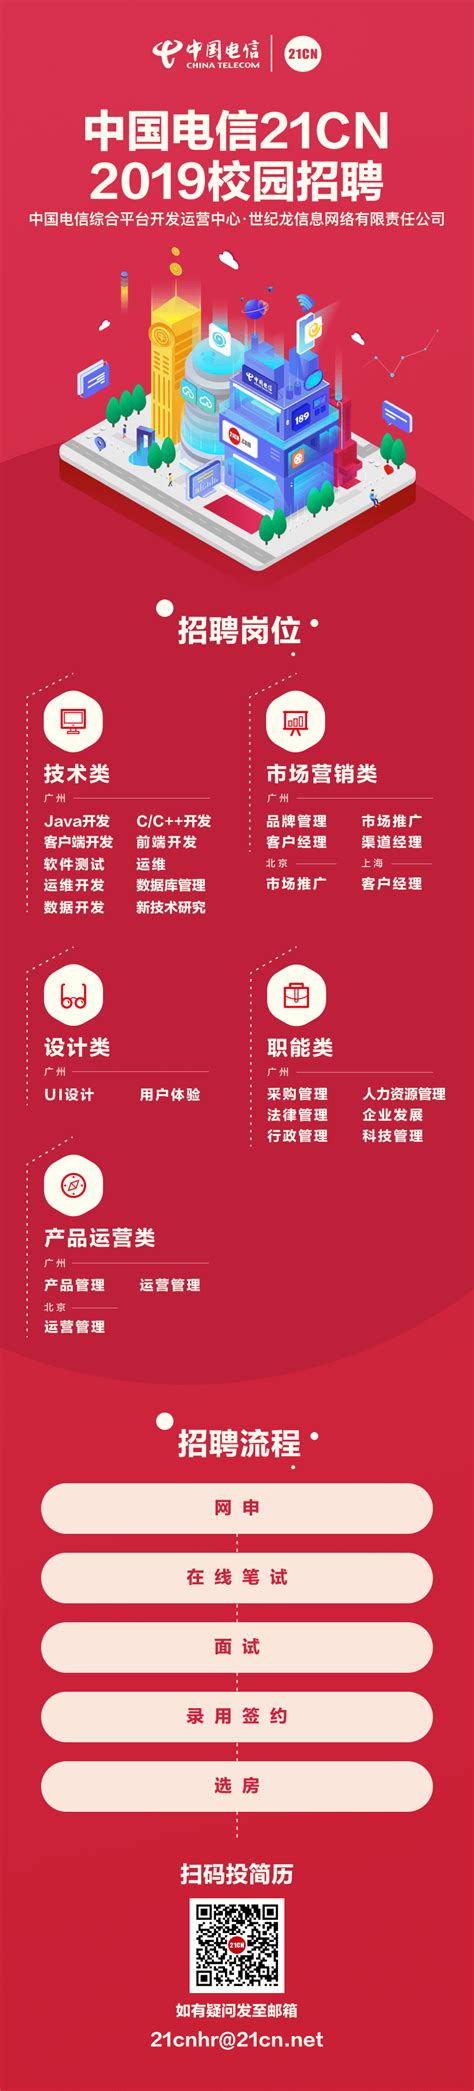 中国电信21CN—第十届国际用户体验创新大赛华南赛区决赛回顾 - 萤火赛谷 - 赛事发布，报名，评审一站式管理平台